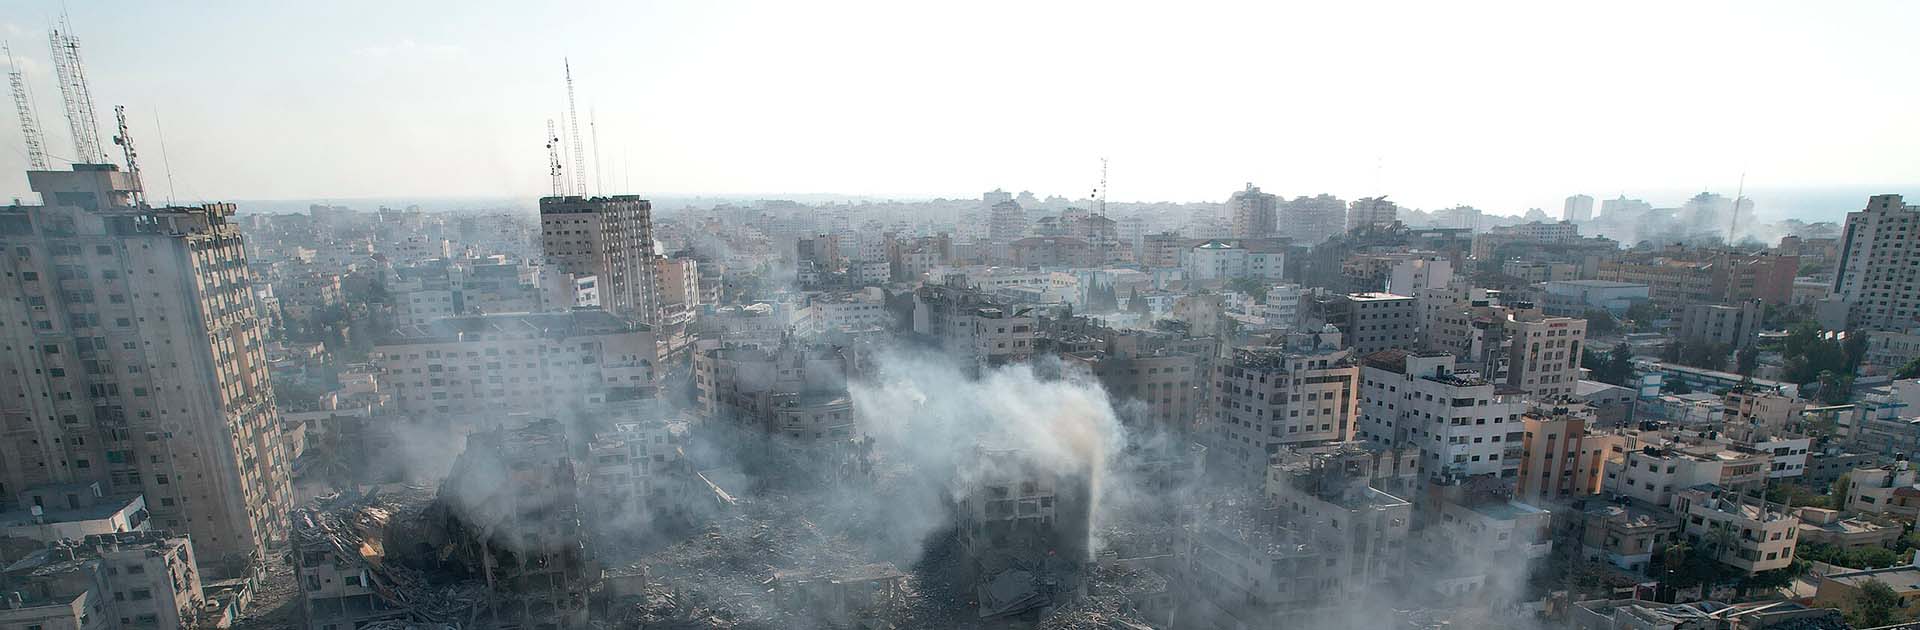 Edificios residenciales situados a 150 m de la Torre Palestina, destruidos durante la primera semana de intensos bombardeos de la aviación israelí. Daños colaterales